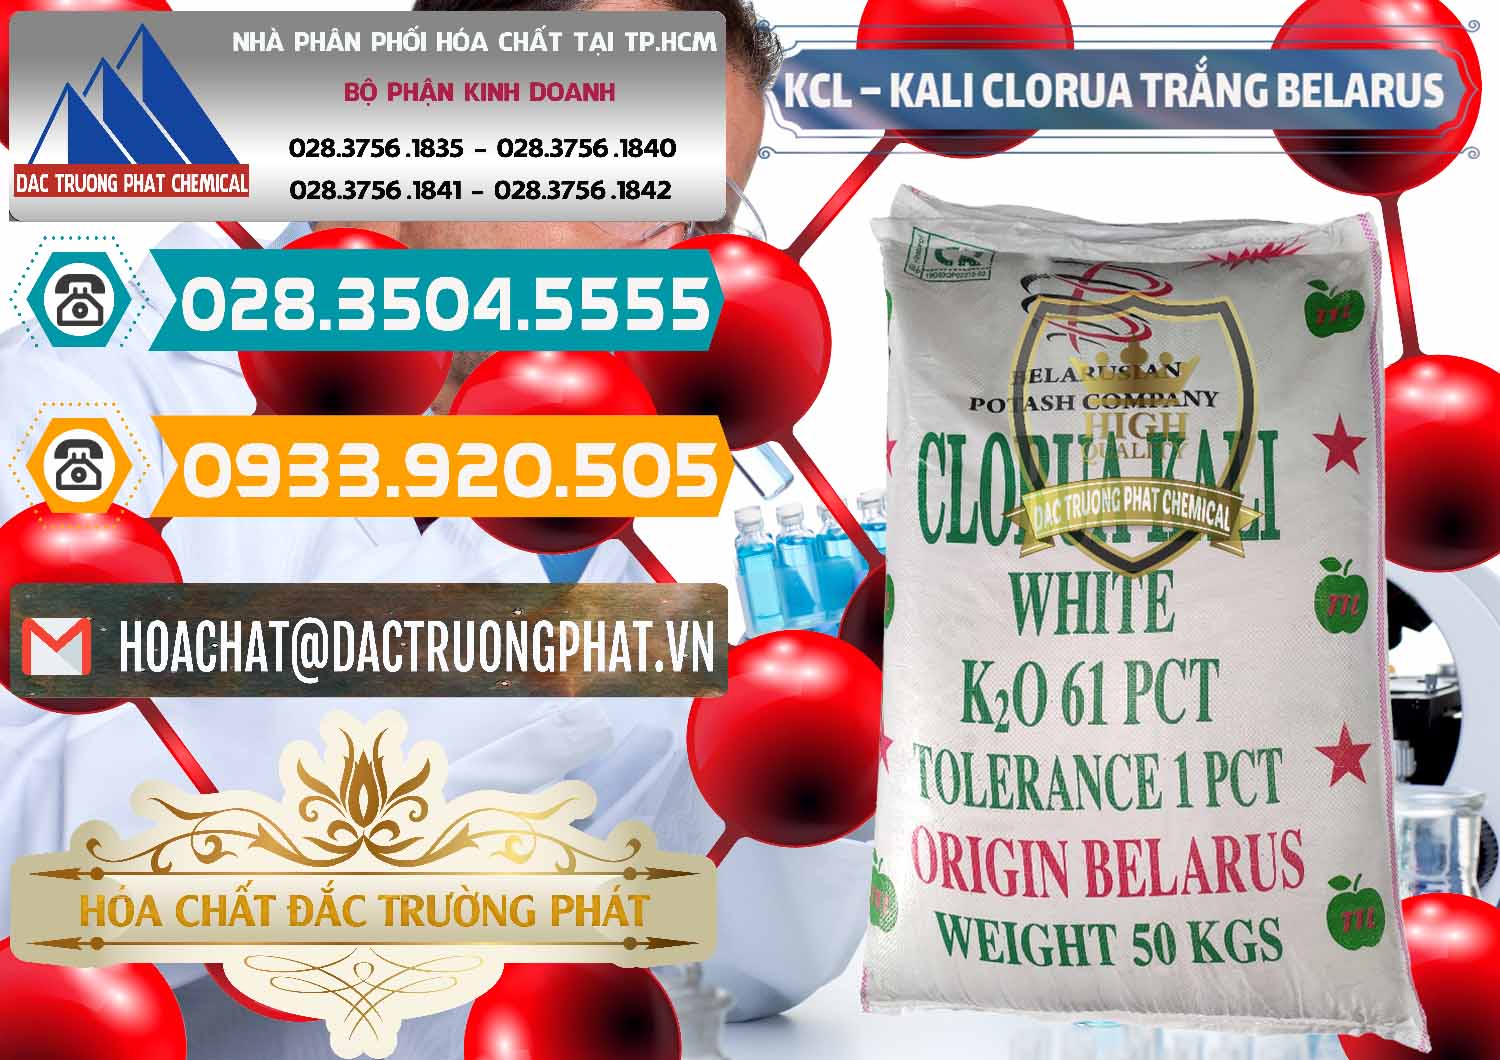 Cty kinh doanh ( bán ) KCL – Kali Clorua Trắng Belarus - 0085 - Cty cung cấp ( kinh doanh ) hóa chất tại TP.HCM - congtyhoachat.vn